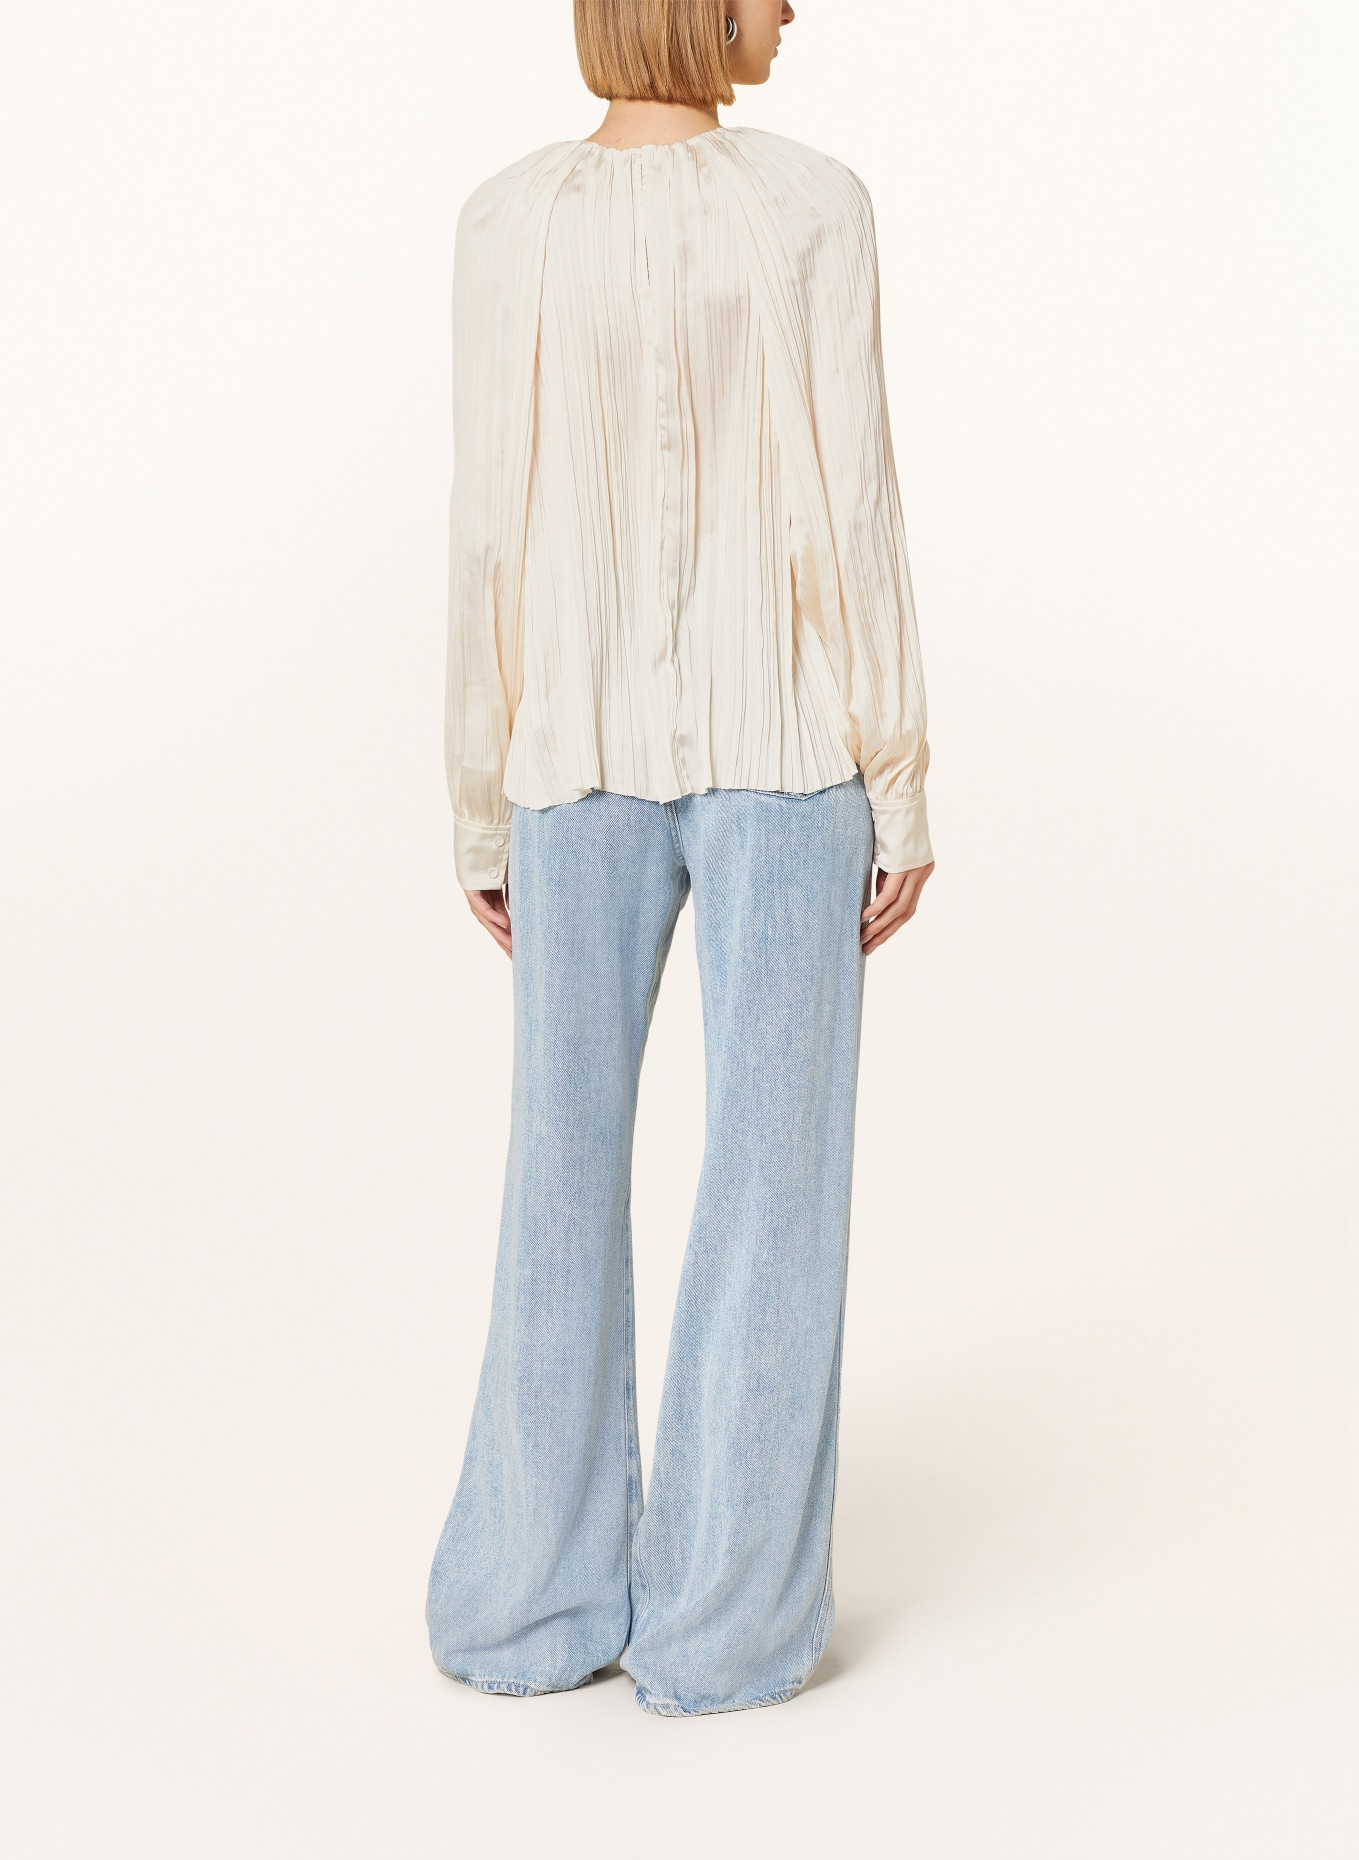 COS Shirt blouse with pleats, Color: ECRU (Image 3)